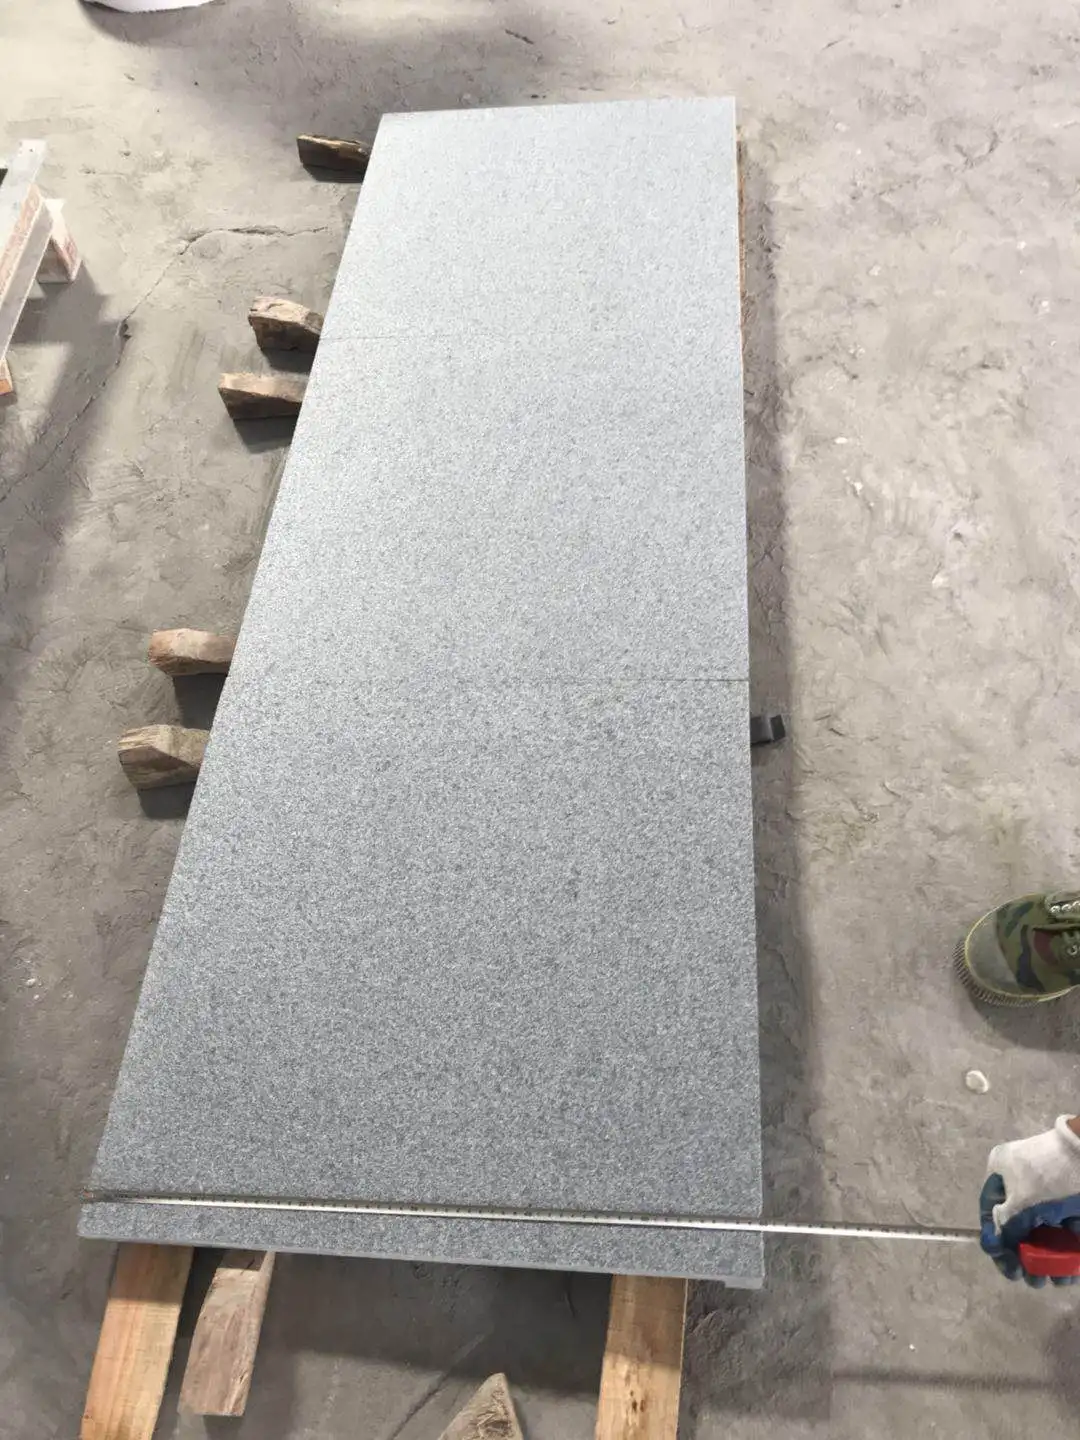 Hotel Outdoor Floor Flamed Tiles Design G654 Gray Granite